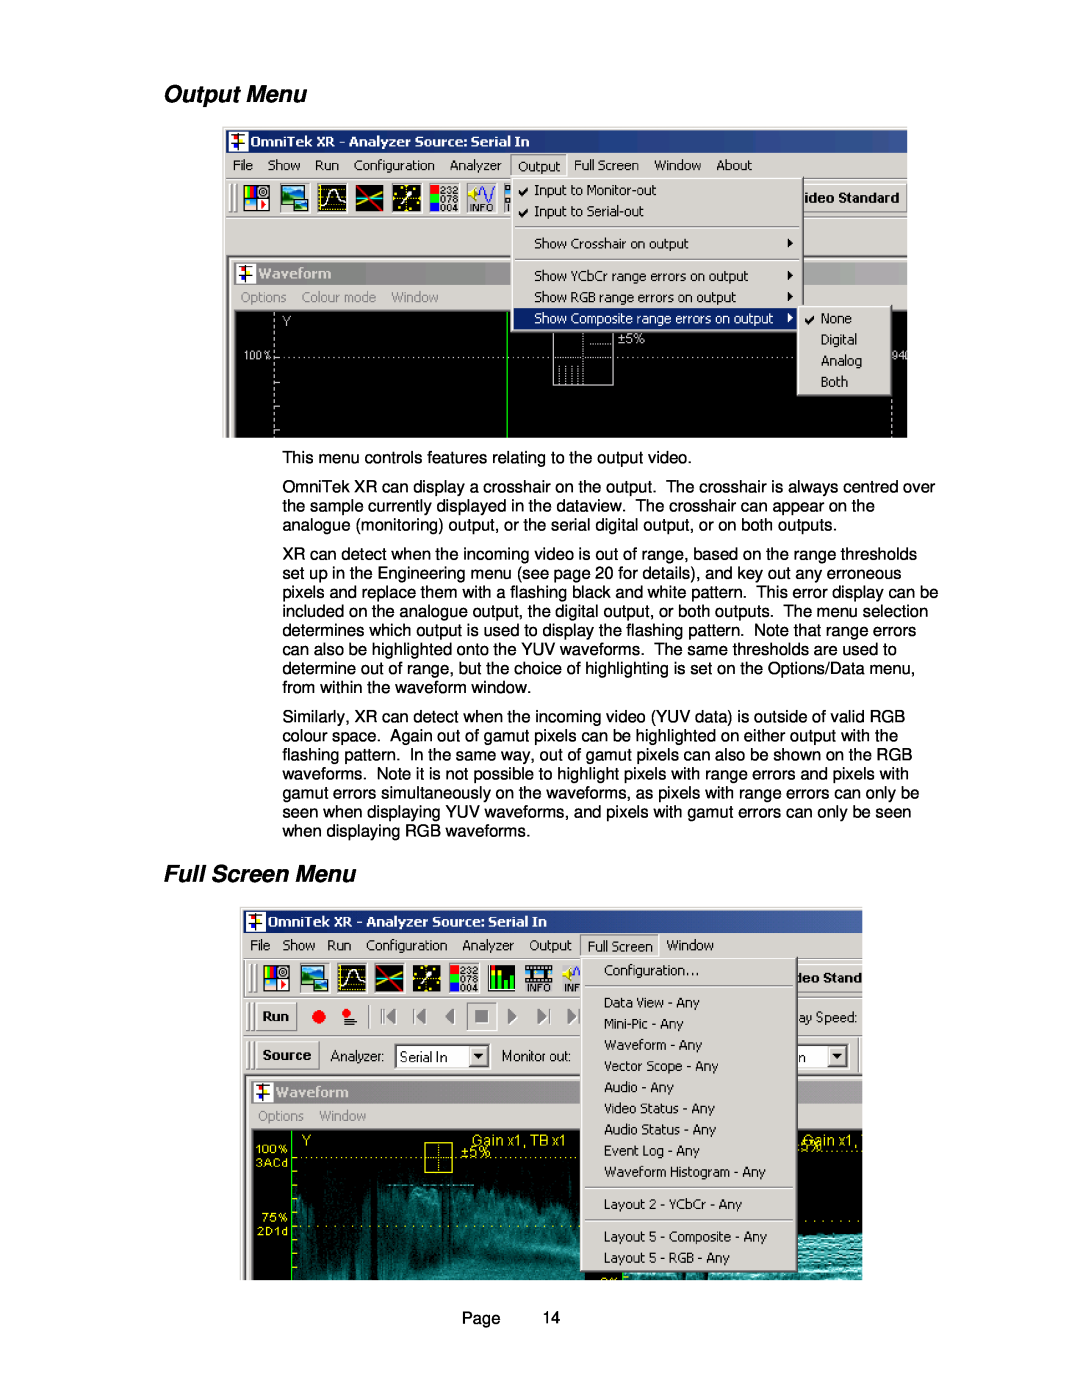 OmniTek OmniTek XR manual Output Menu, Full Screen Menu 